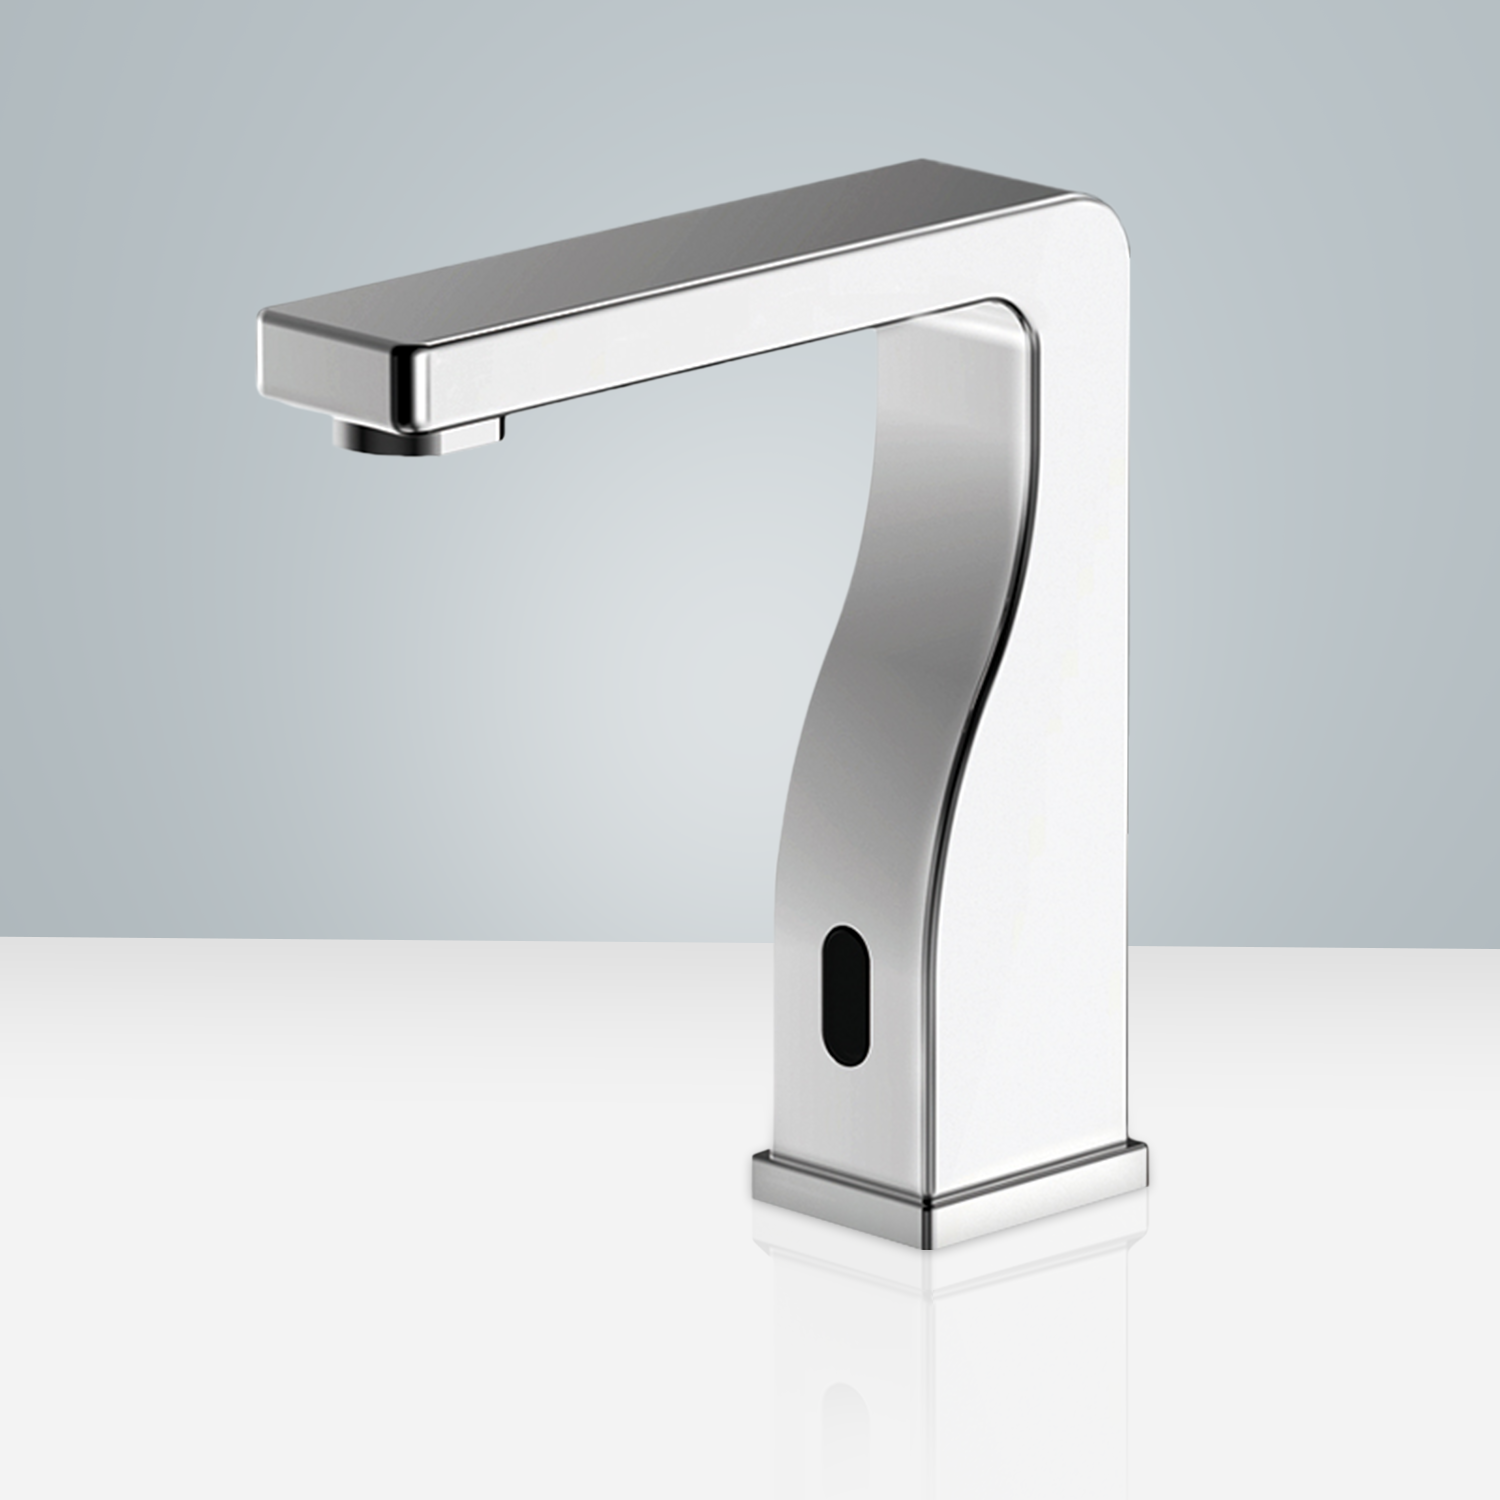 Bravat Commercial Automatic Hands Free Sensor Faucets